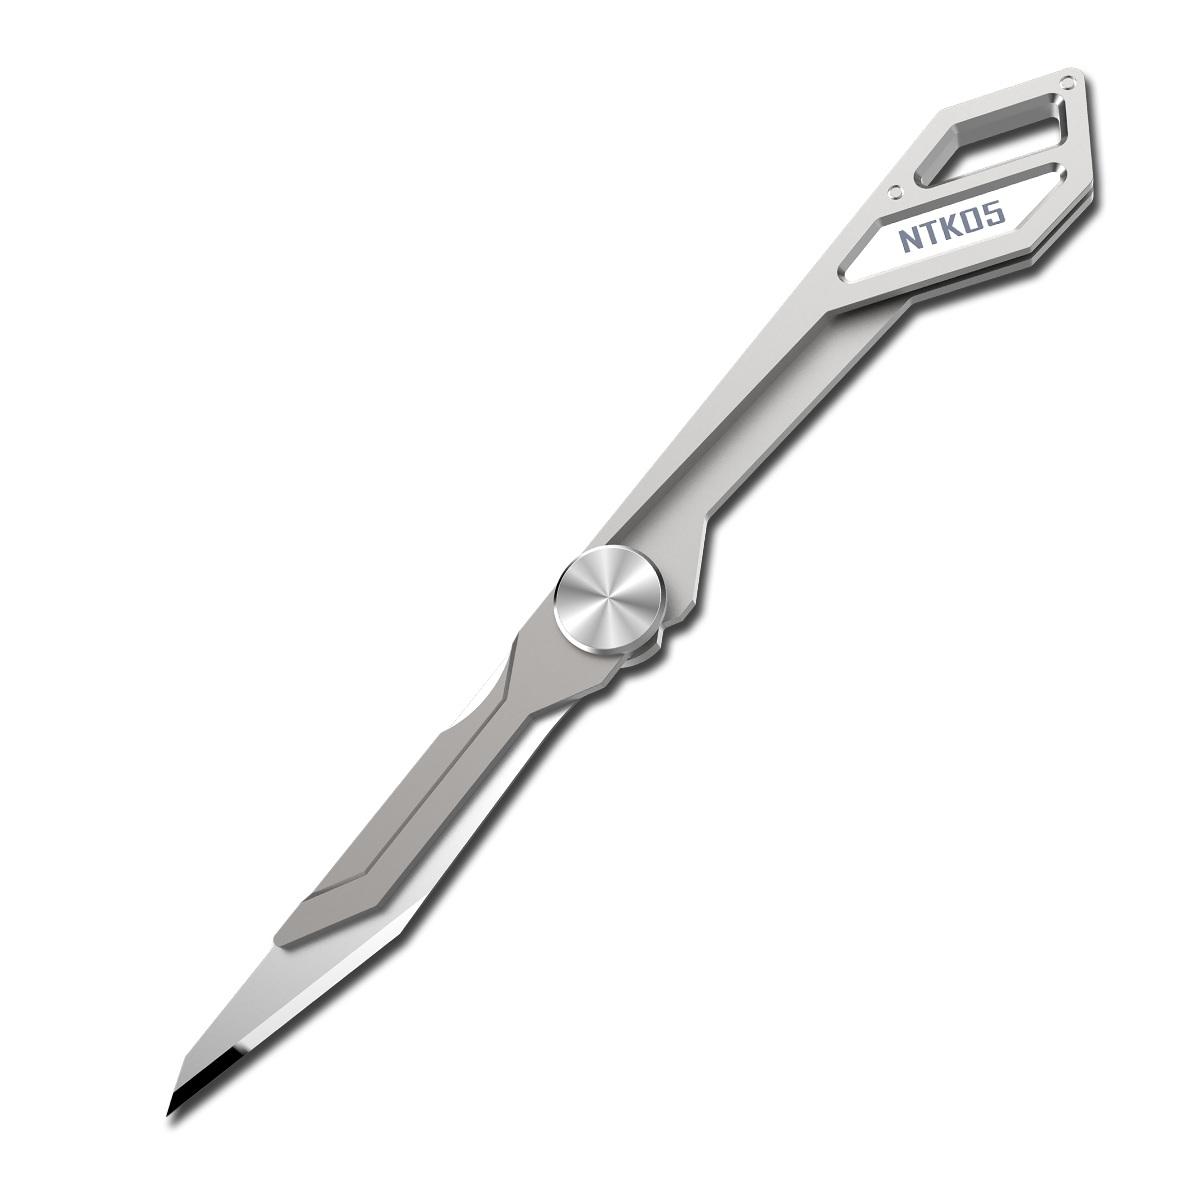 Couteau pliant NITECORE NTKO5 en alliage de titane TC4 ultraléger, avec lame pliante de 97 mm et un poids de 4,7 g, et boucle pour porte-clés.